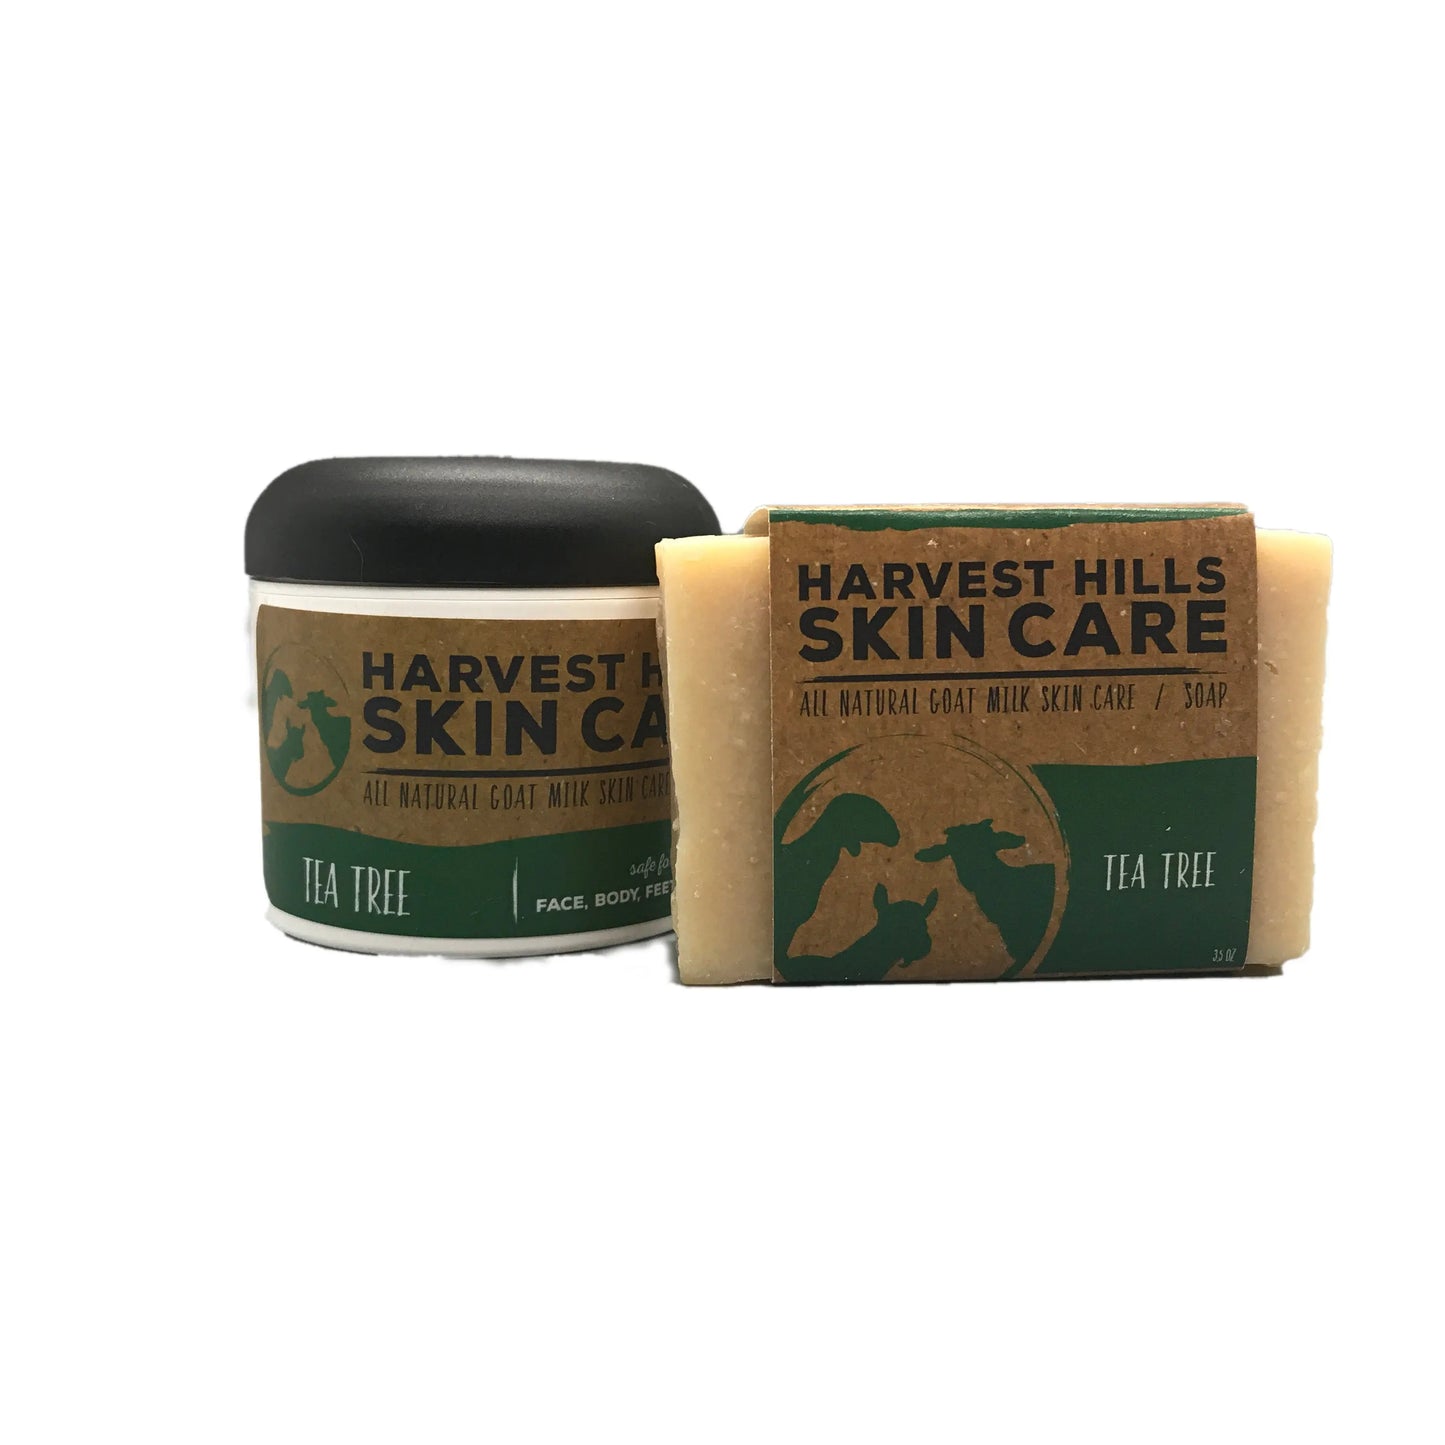 Tea Tree Soap Harvest Hills Skin Care All Natural Goat Milk Skin Care